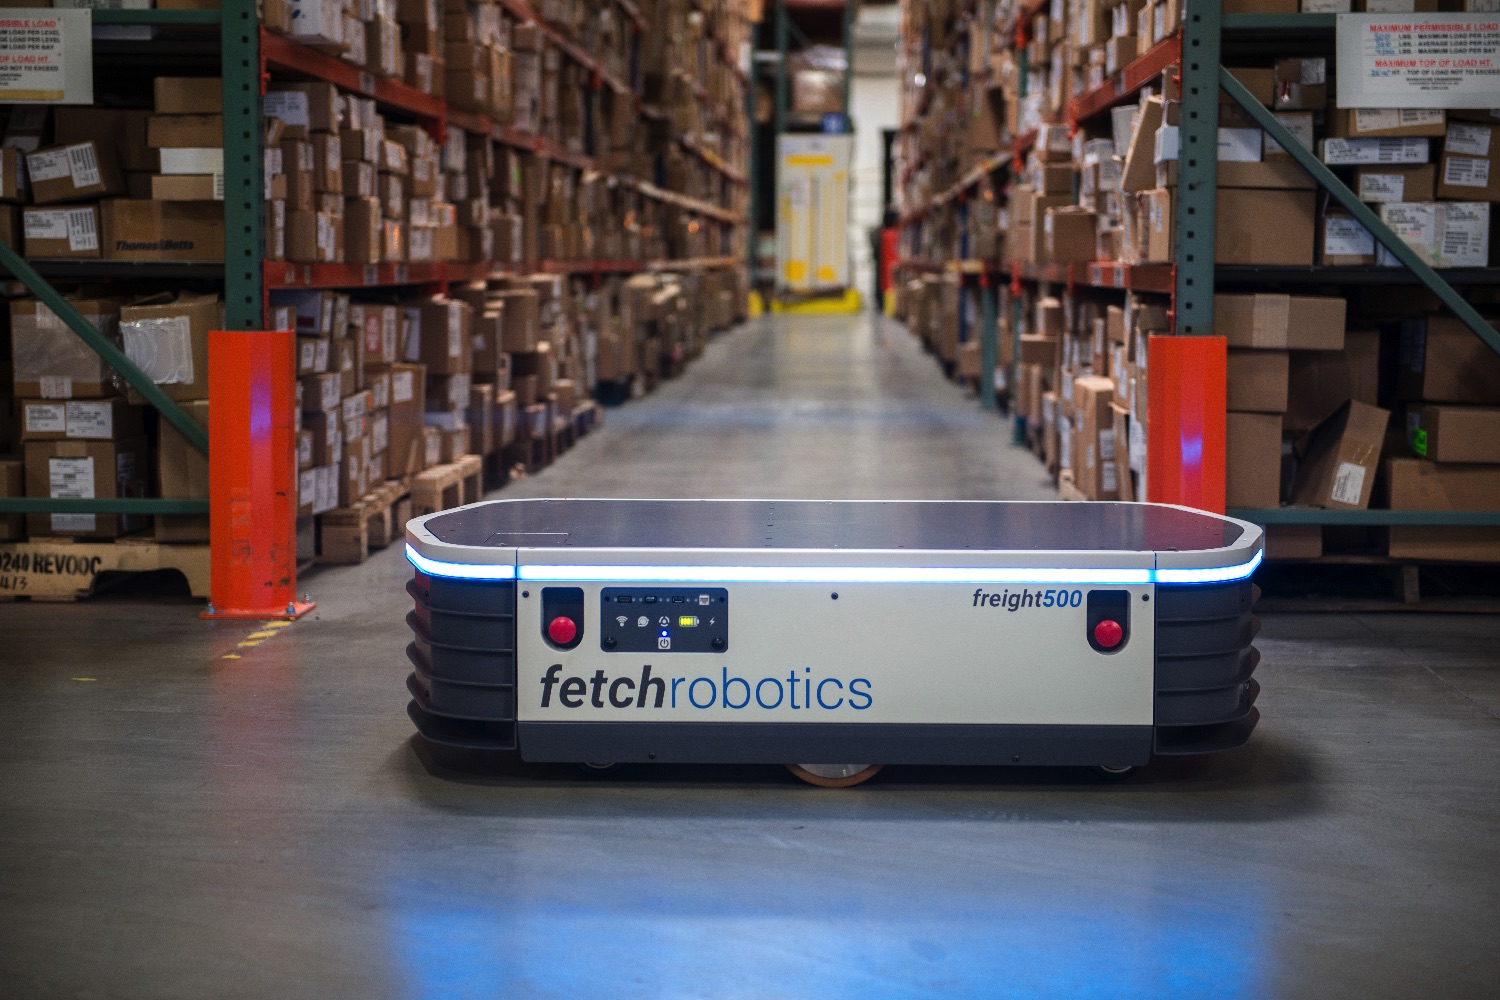 autonomous warehouse robots freight500 freight1500 fetch 80e6916 copy high